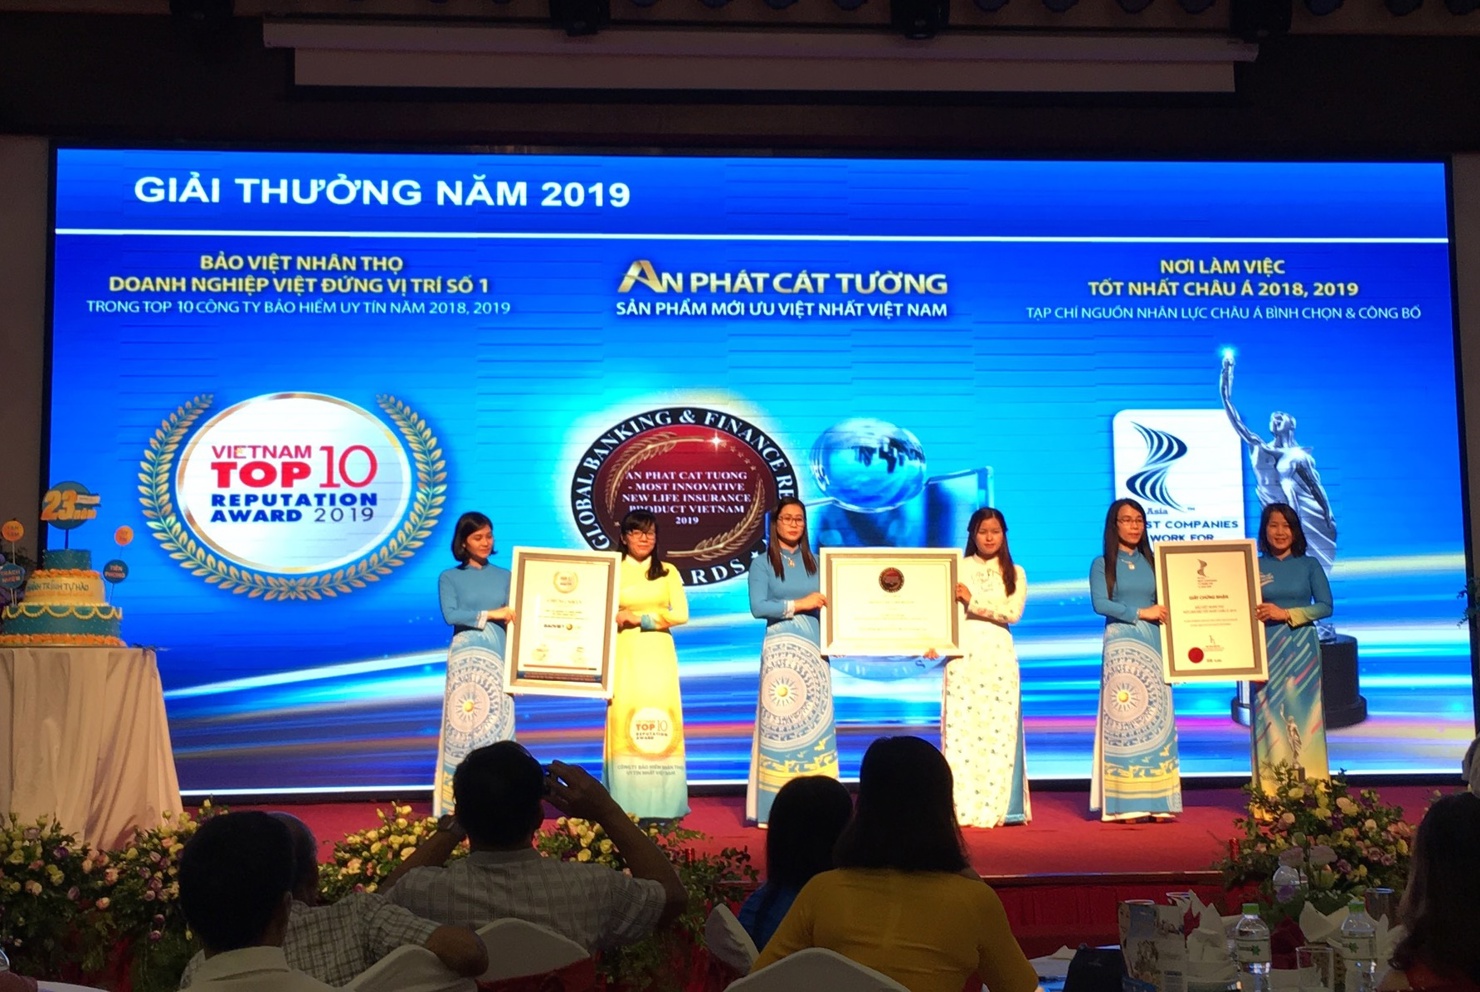 Bảo Việt Nhân thọ đón nhận các giải thưởng uy tín trong dịp kỉ niệm 23 năm thành lập.